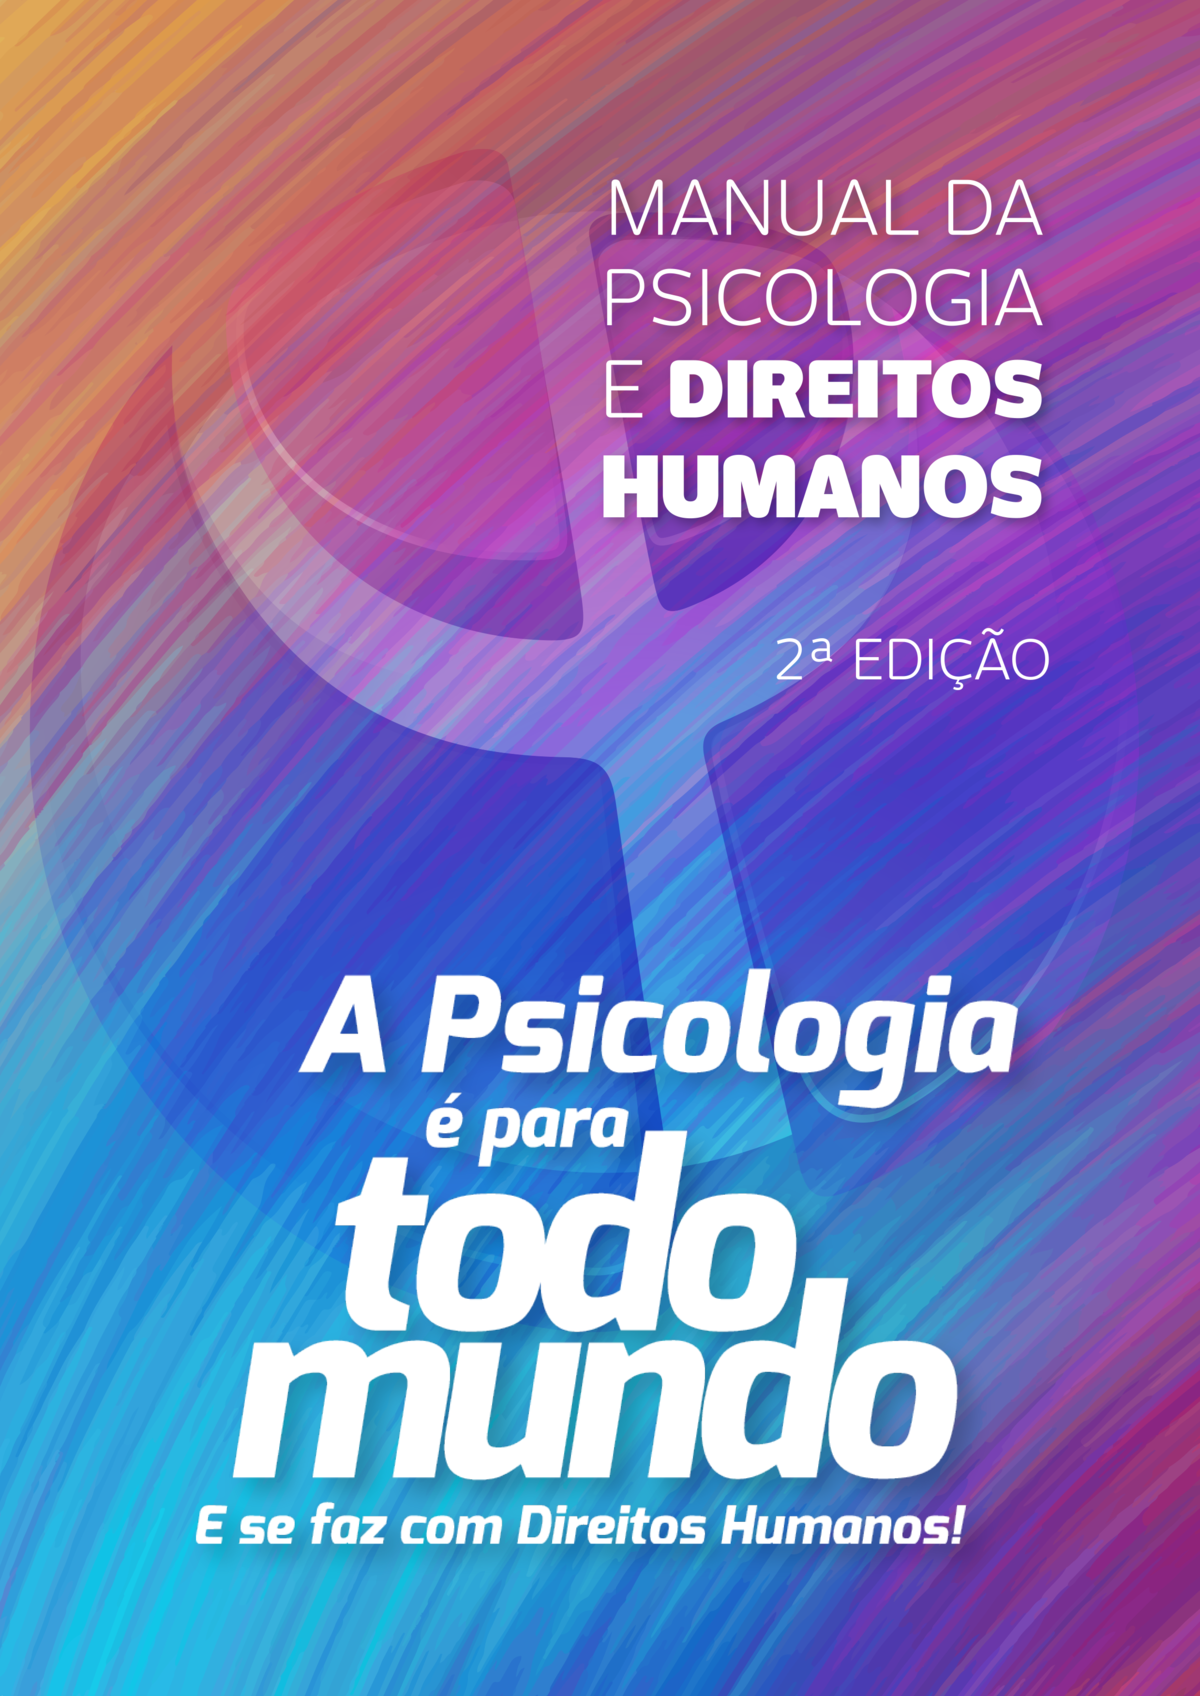 Manual da Psicologia e Direitos Humanos